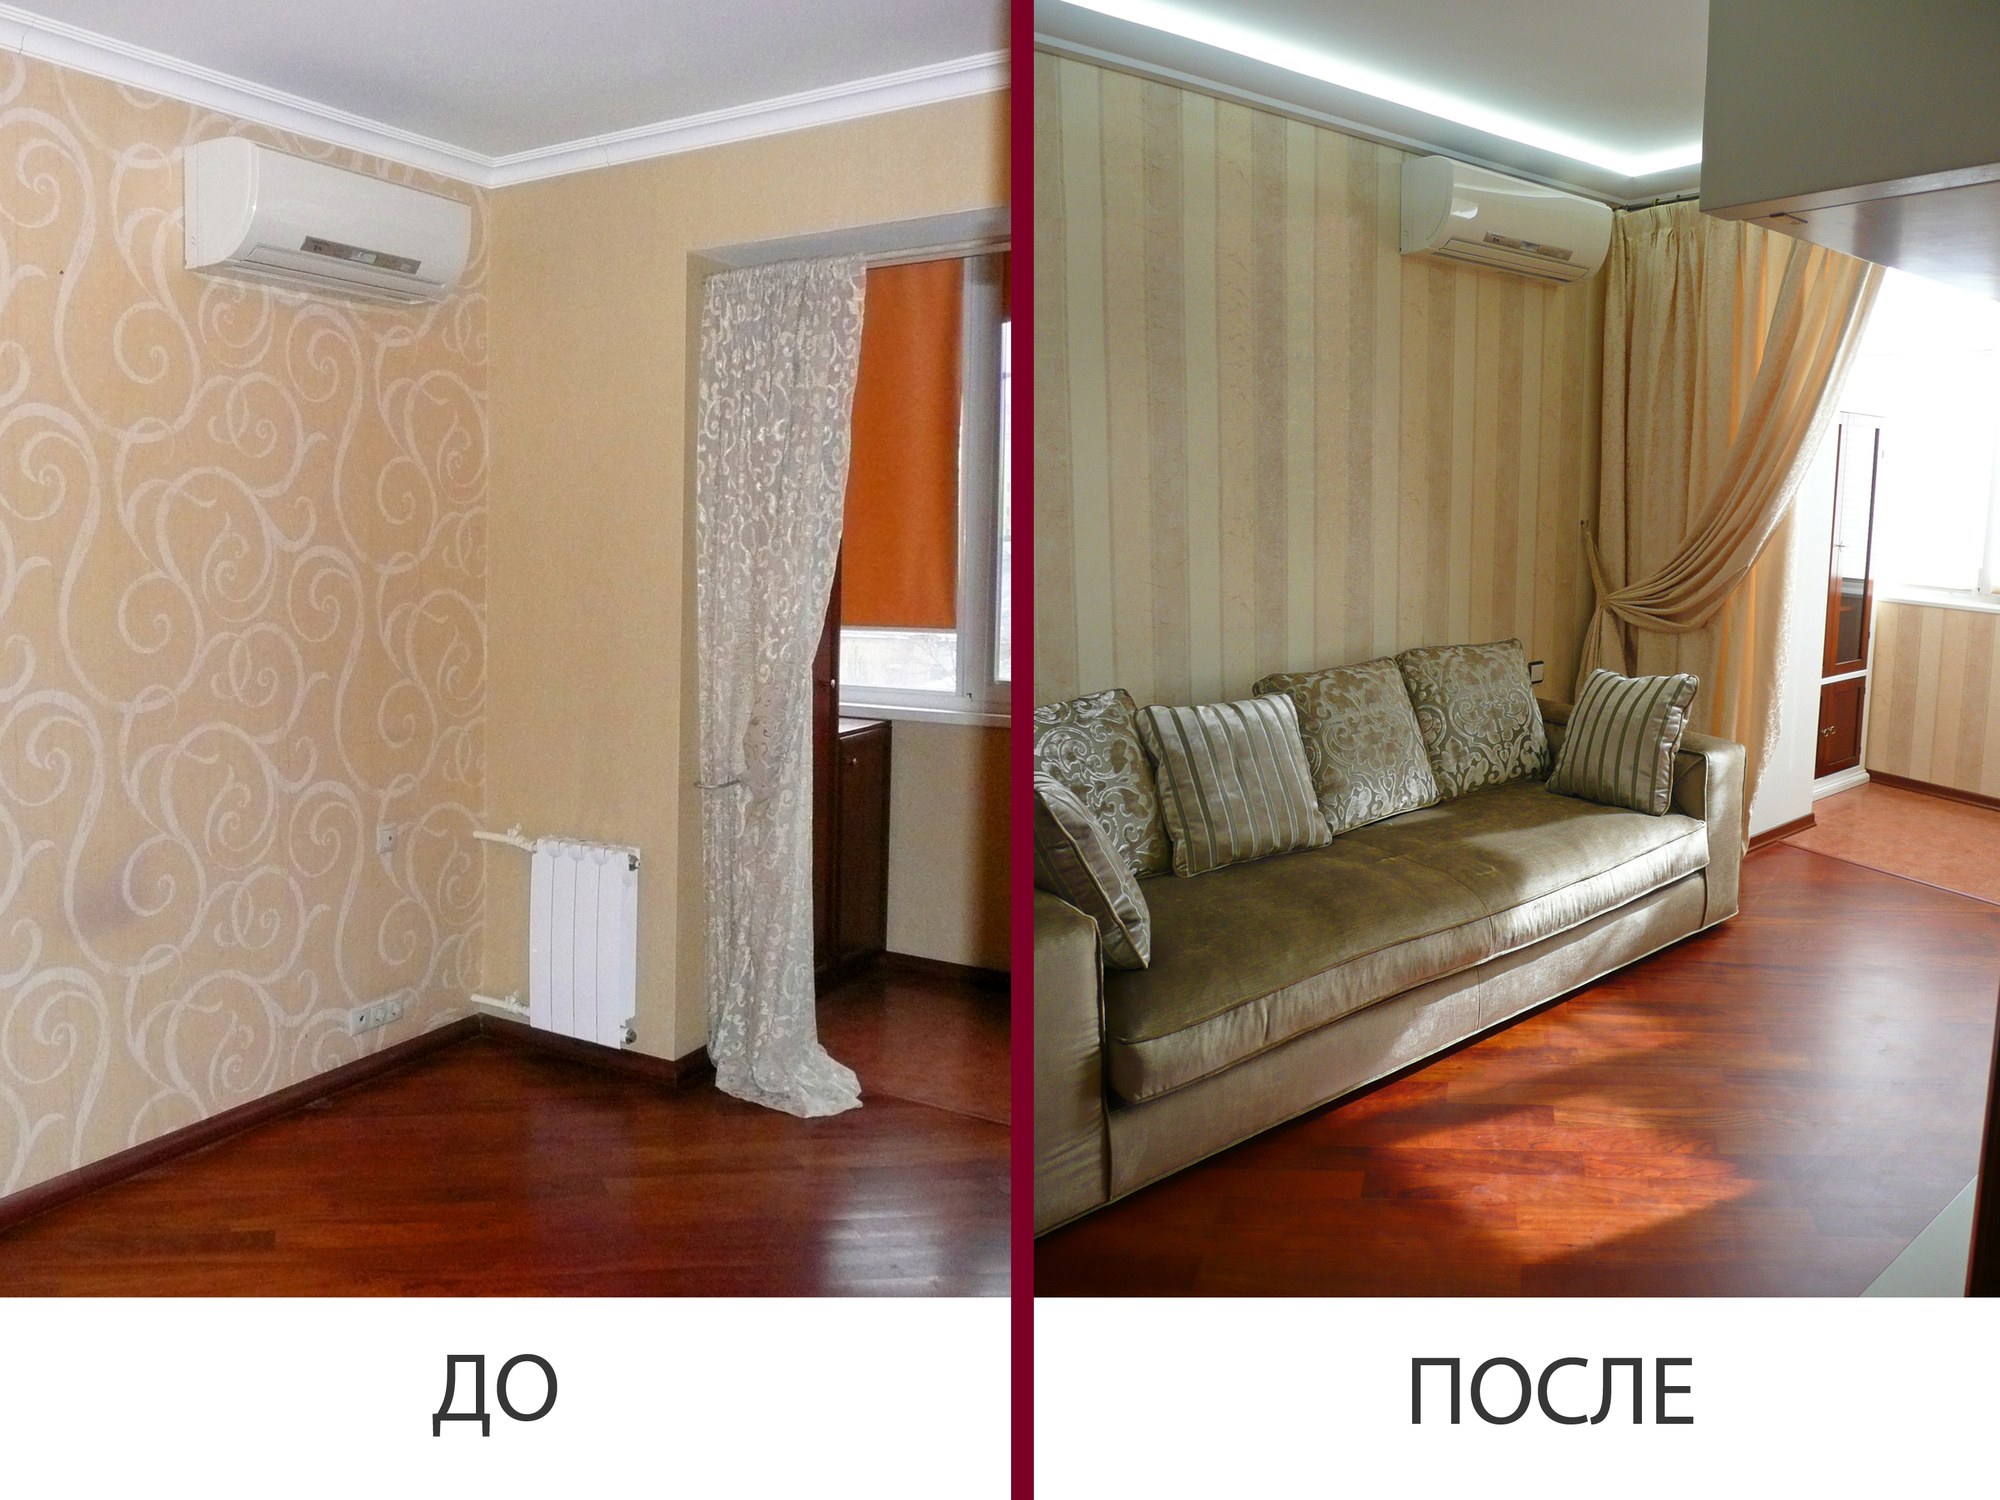 Косметический ремонт квартиры до и после